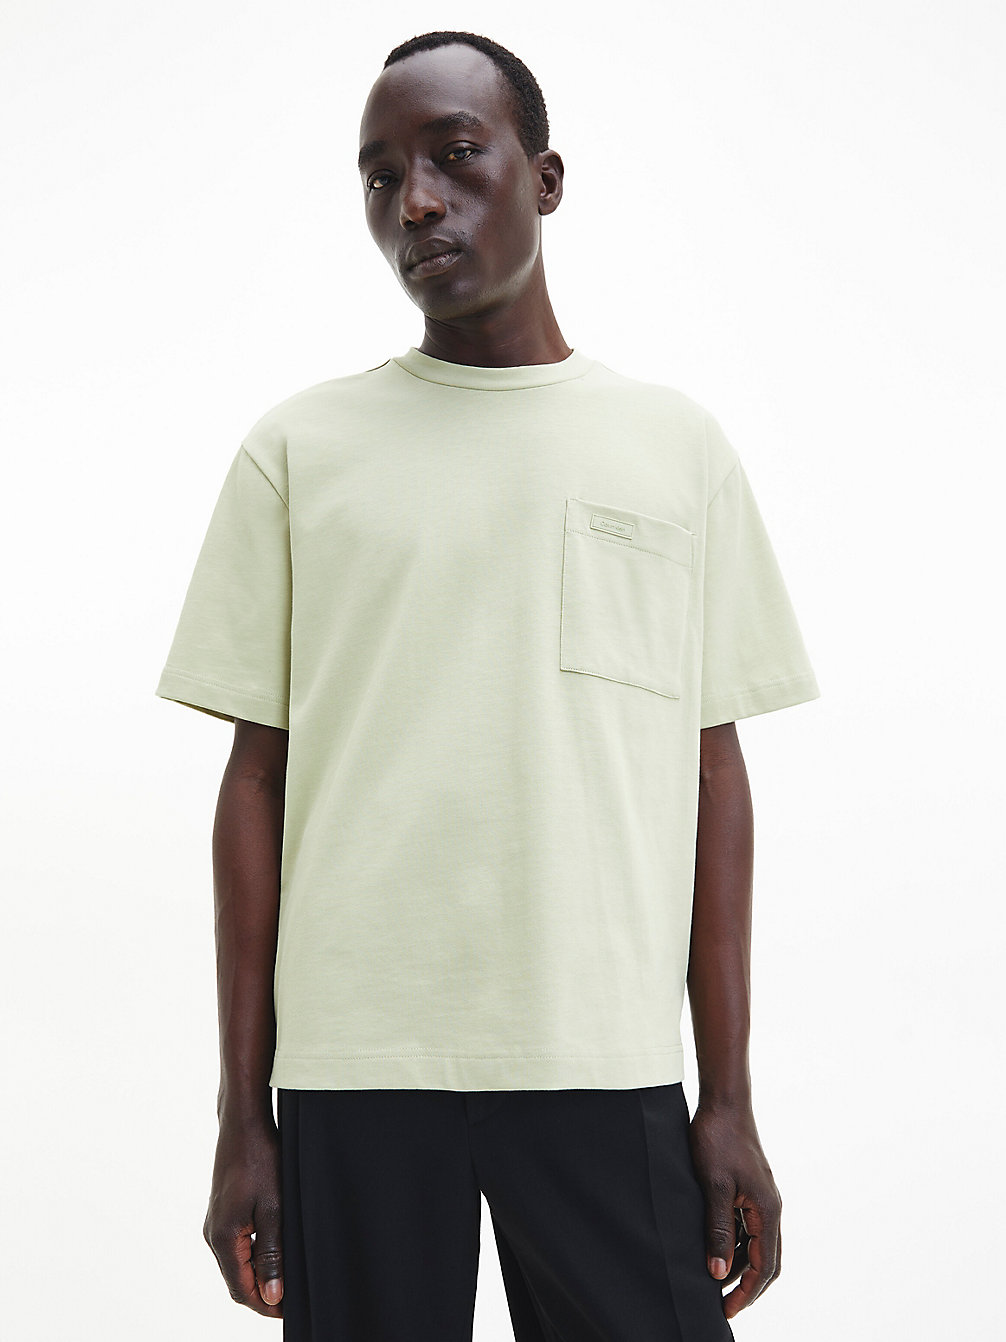 HERB TEA > Swobodny T-Shirt Z Kieszenią Z Bawełny Organicznej > undefined Mężczyźni - Calvin Klein